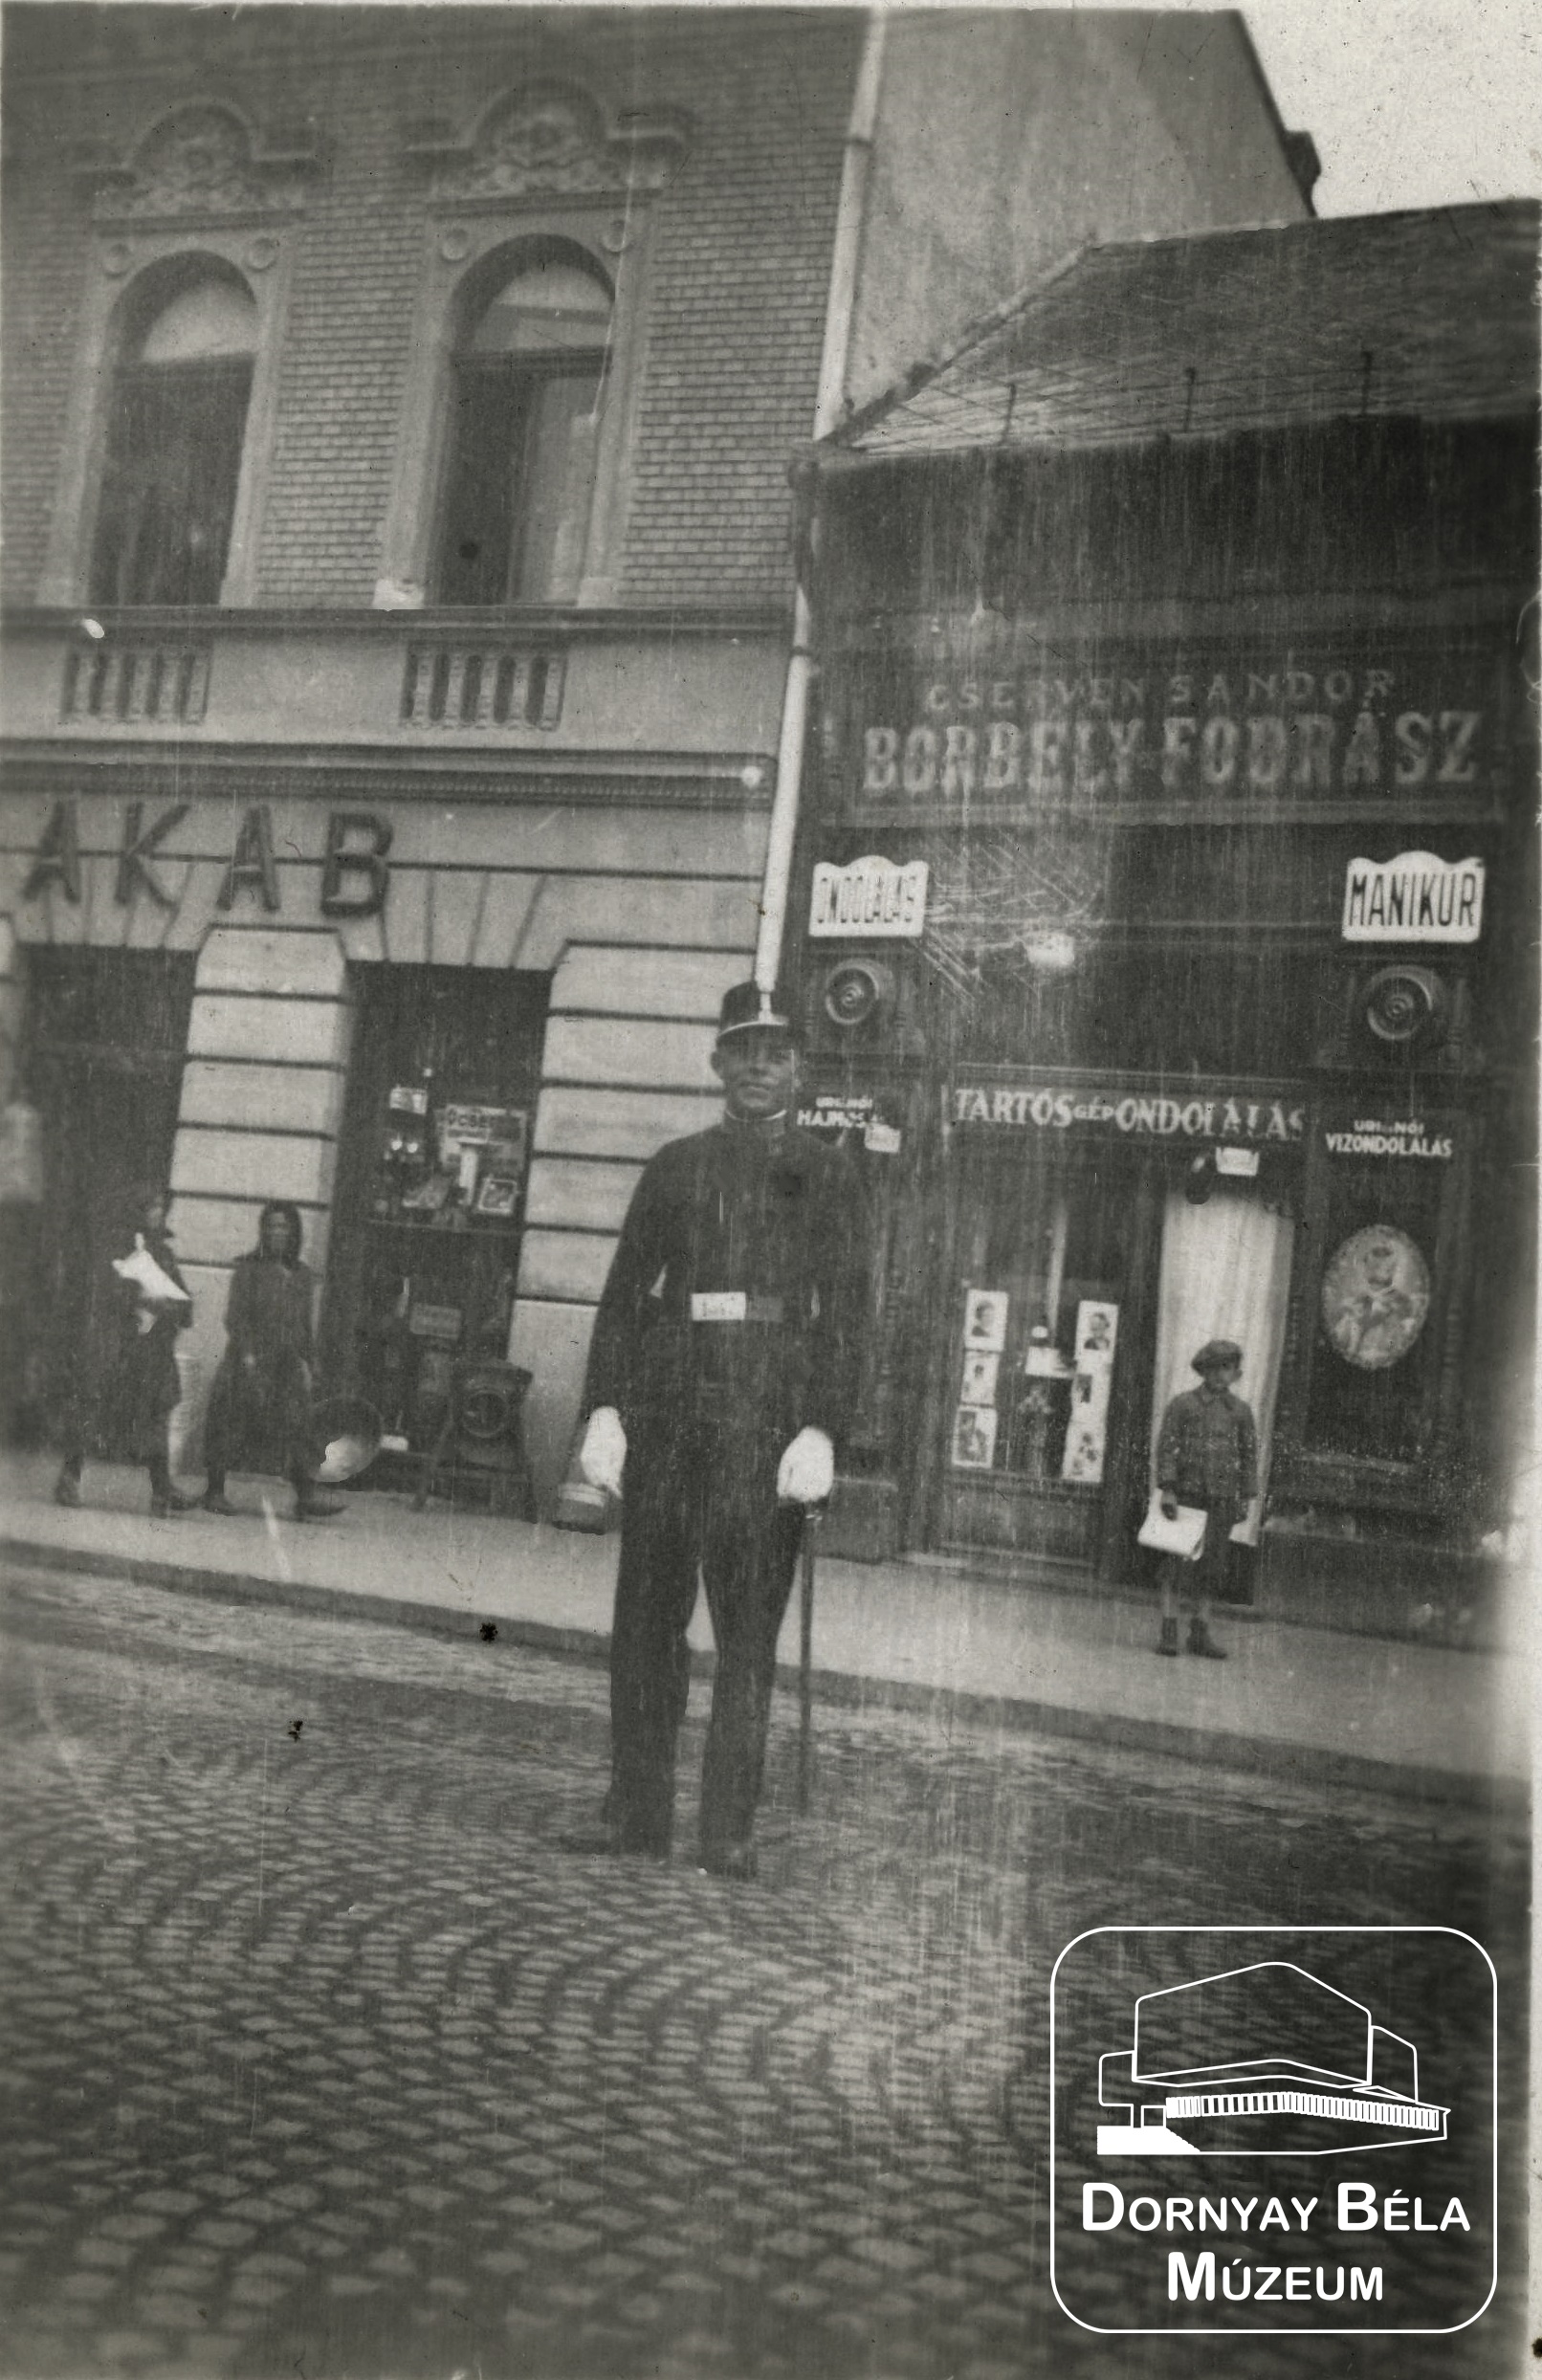 Cserven Sándor Borbély és Fodrász üzlete előtt álló katona. (Dornyay Béla Múzeum, Salgótarján CC BY-NC-SA)